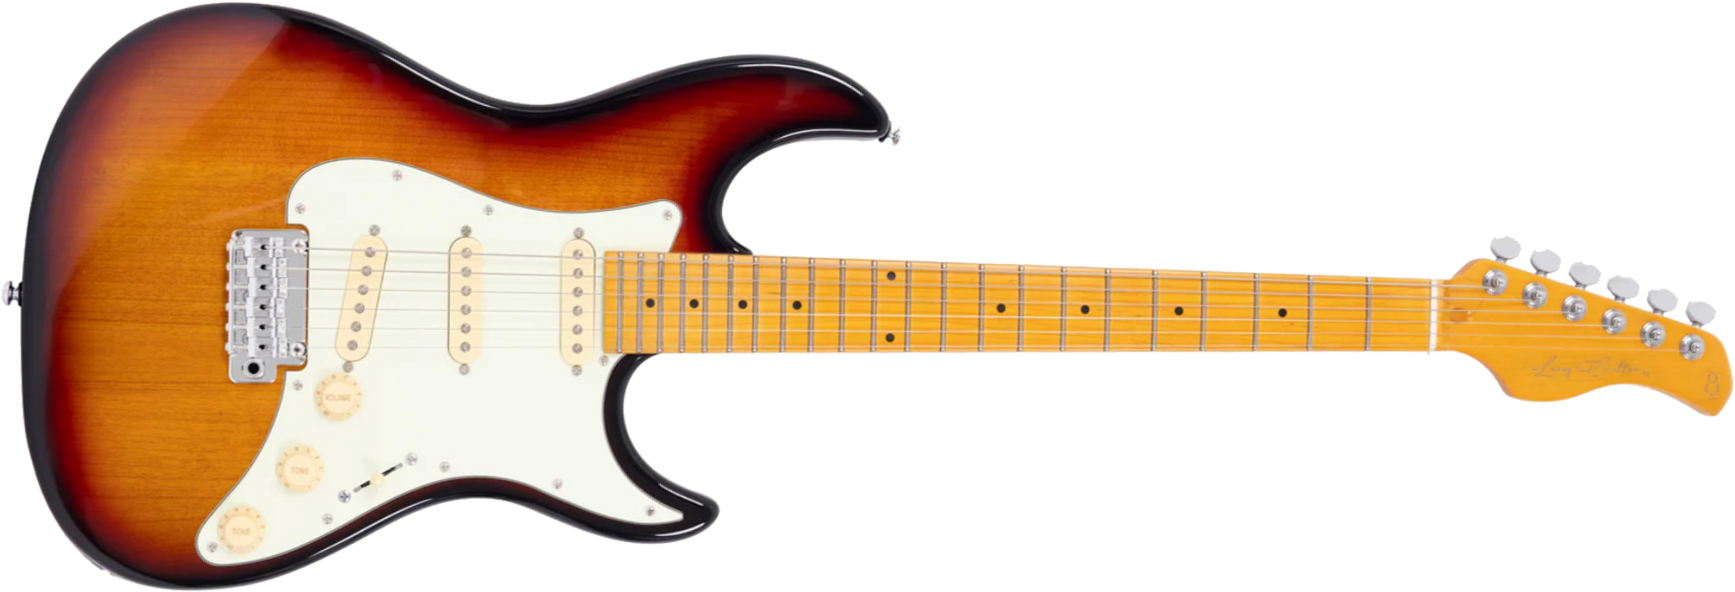 Sire Larry Carlton S5 3s Trem Mn - 3-tone Sunburst - Guitare Électrique Forme Str - Main picture